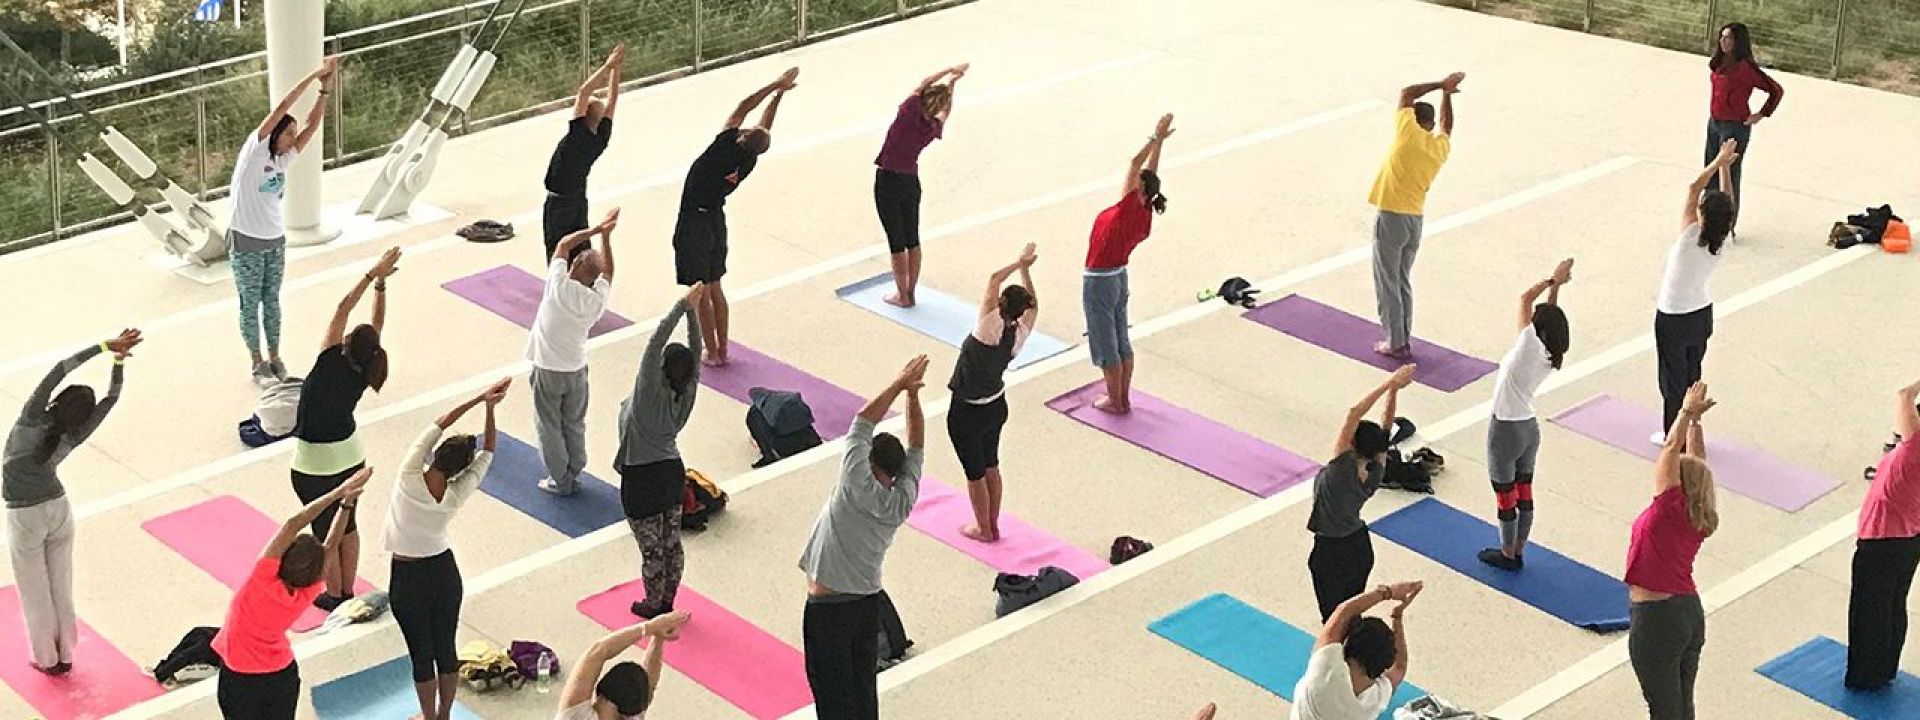 Φωτογραφία από τη δραστηριότητα Yoga στο Πάρκο